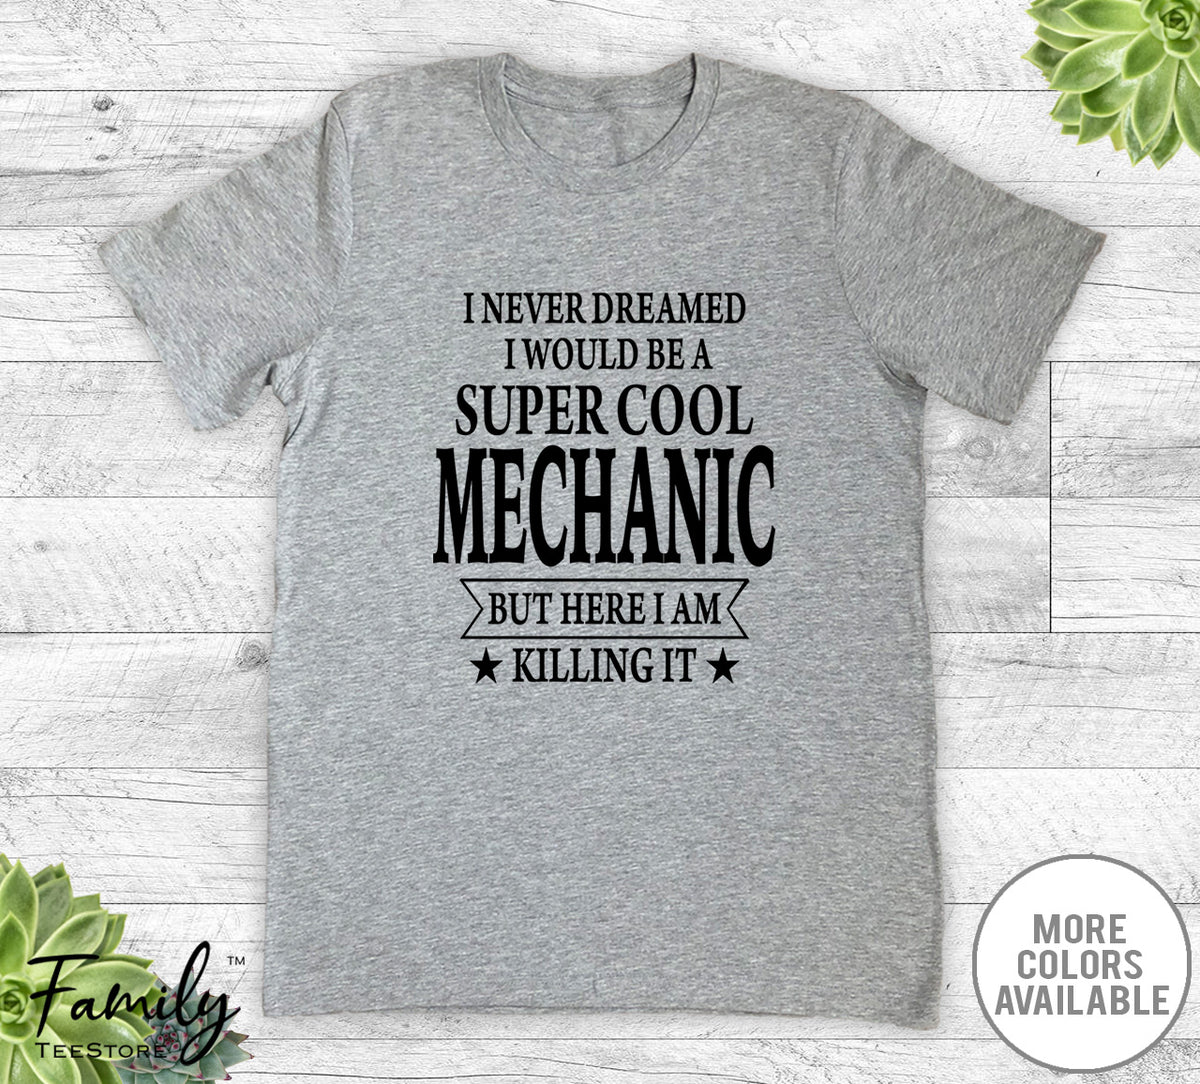 I Never Dreamed I'd Be A Super Cool Mechanic - Unisex T-shirt - Mechanic Shirt - Mechanic Gift